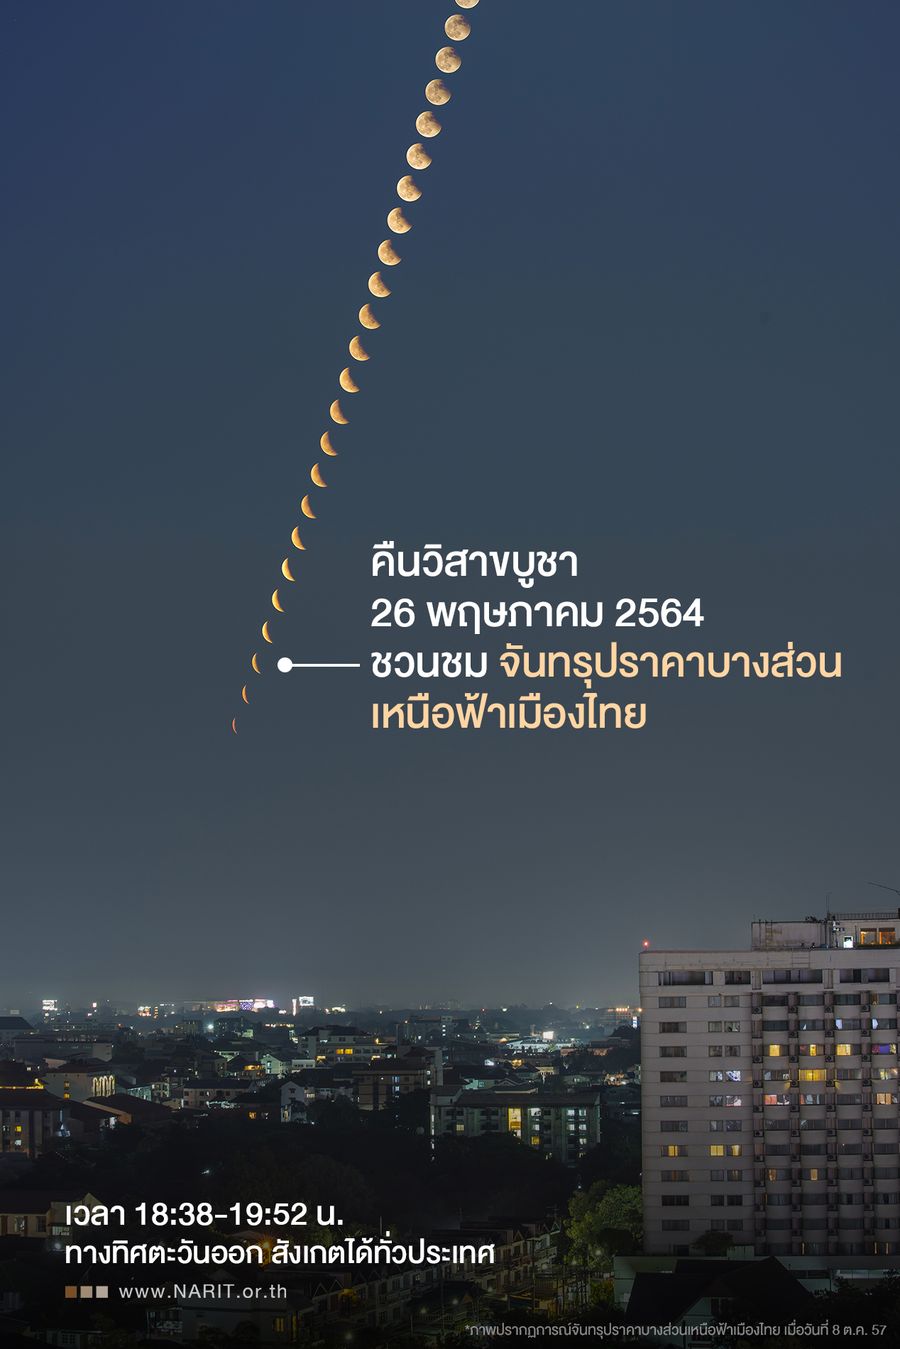 คืนวิสาขบูชา 26 พฤษภาคม  ชวนชมจันทรุปราคาบางส่วนเหนือฟ้าเมืองไทย